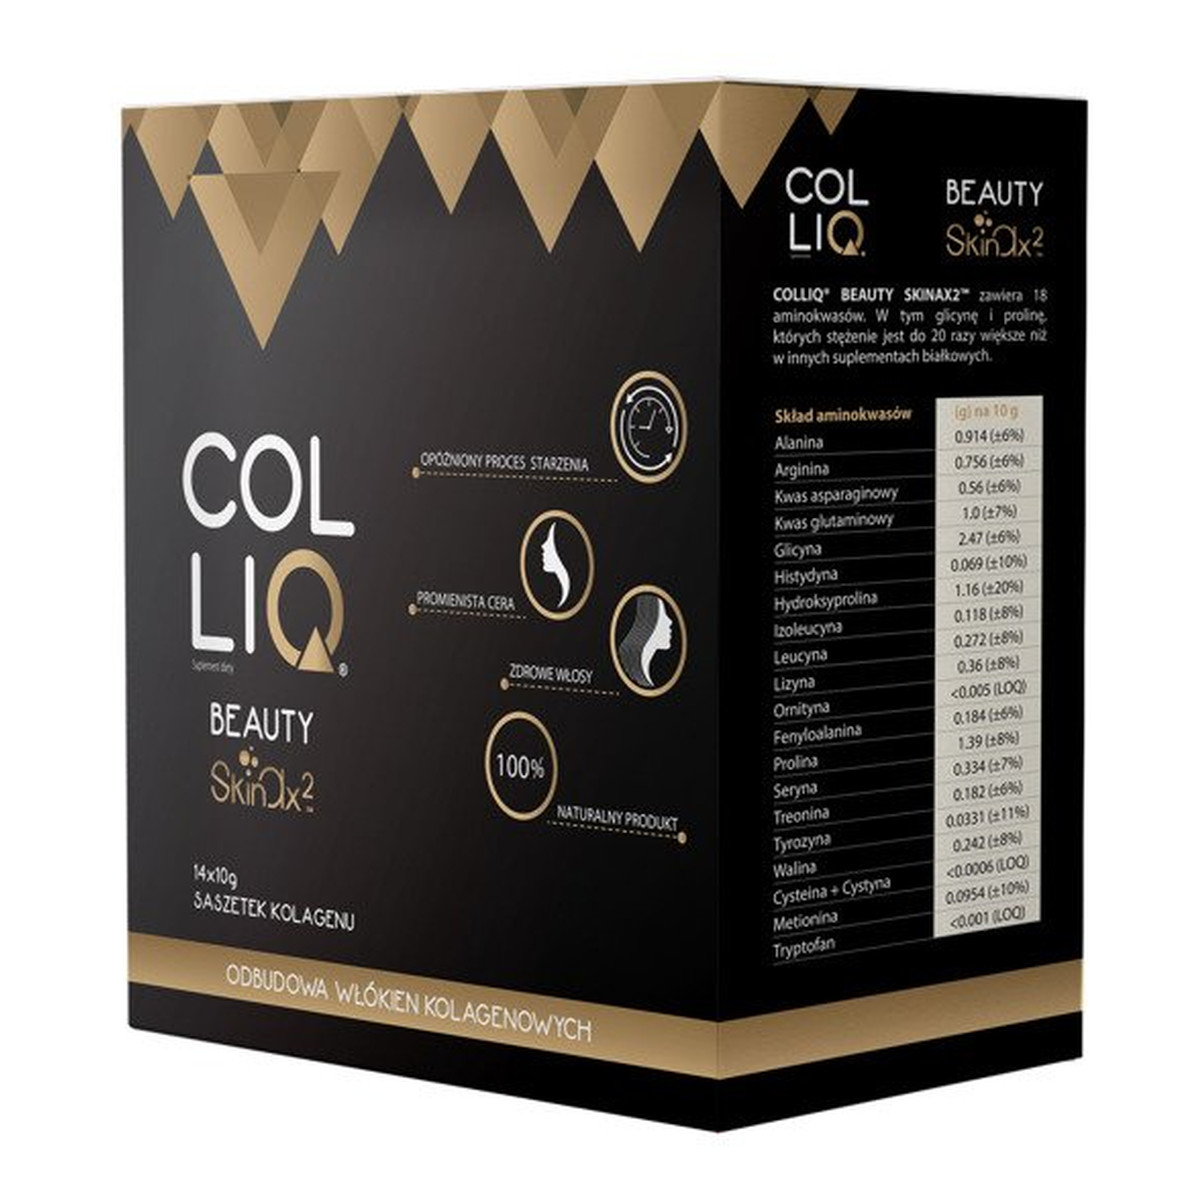 Colliq Beauty Skinax2 suplement diety 14x10g saszetek kolagenu odbudowa włokien kolagenowych 140g